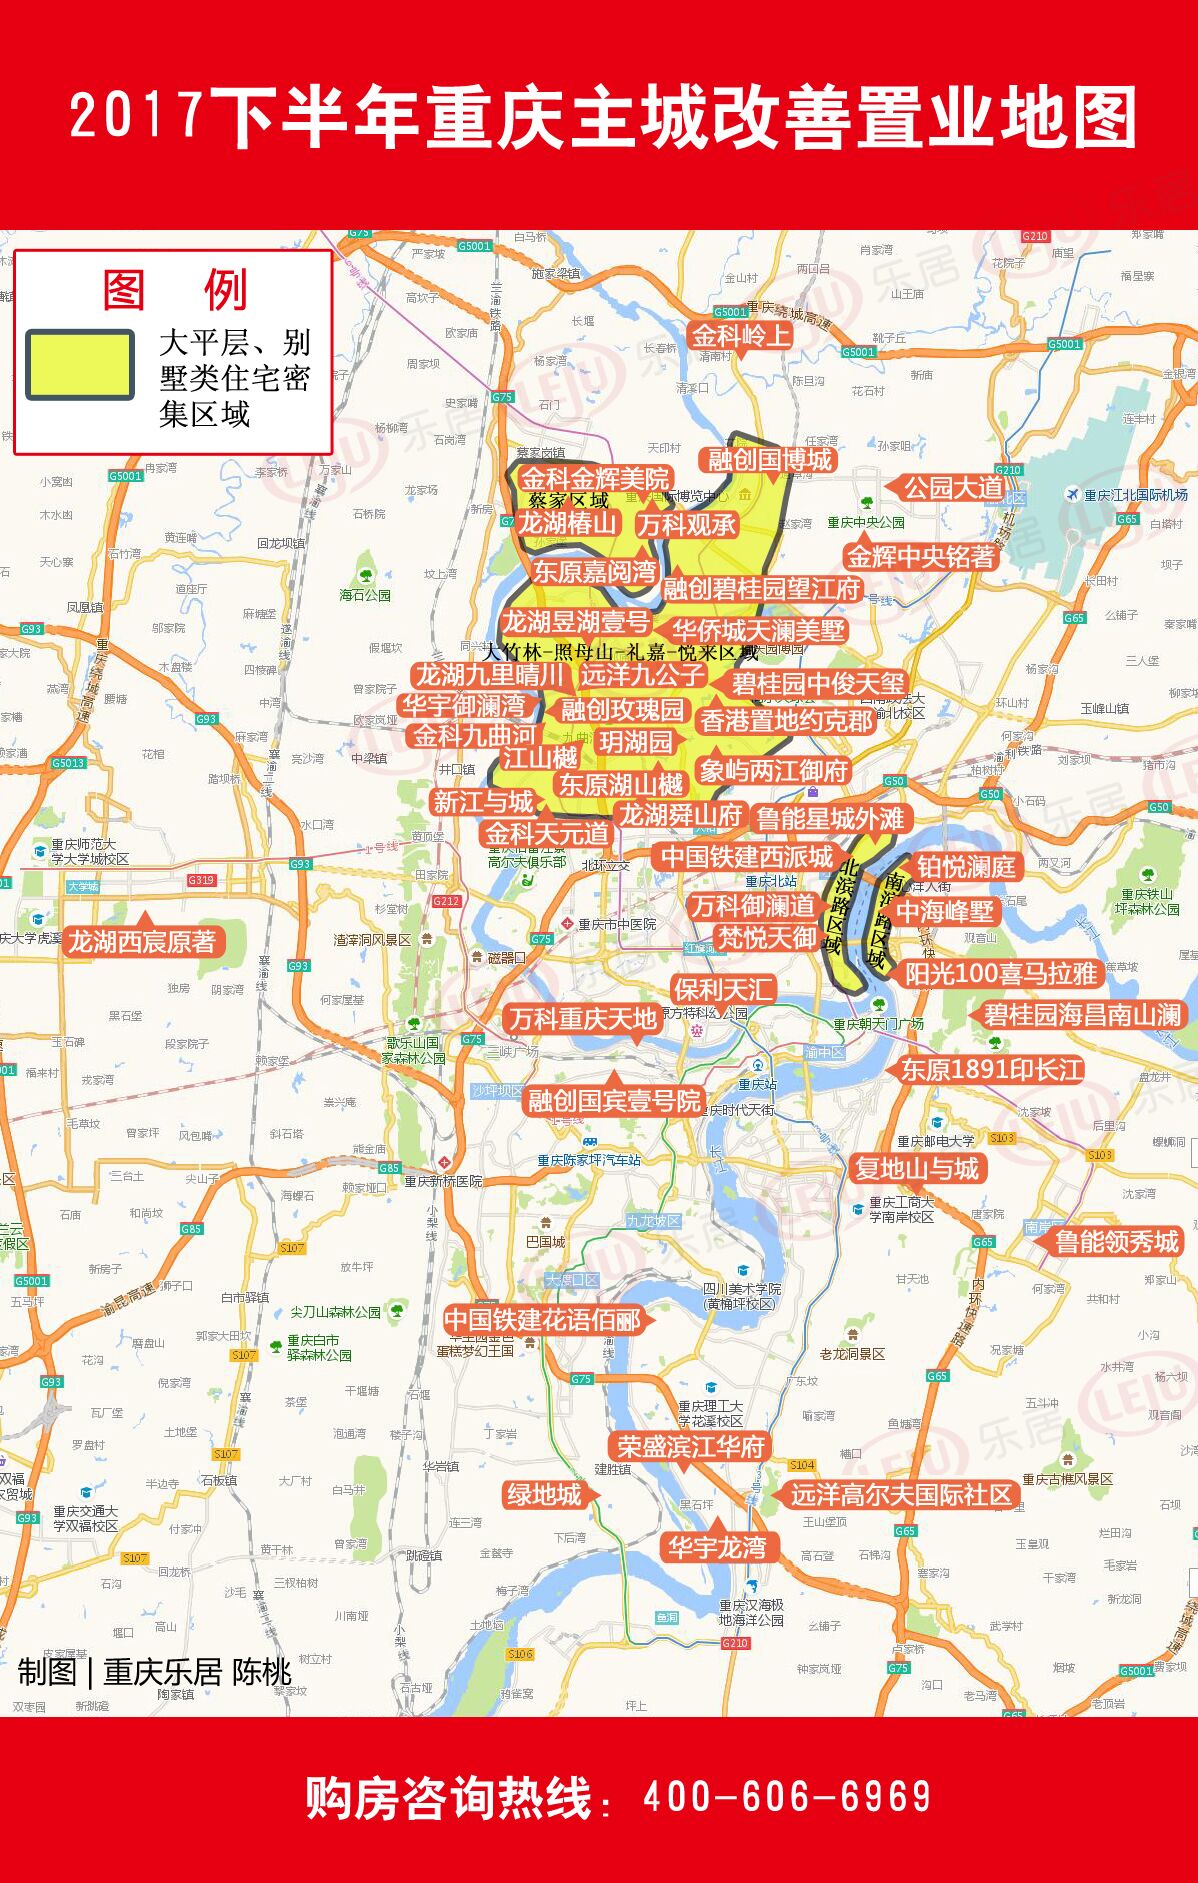 独家:重庆主城改善买房地图!大平层产品走俏高